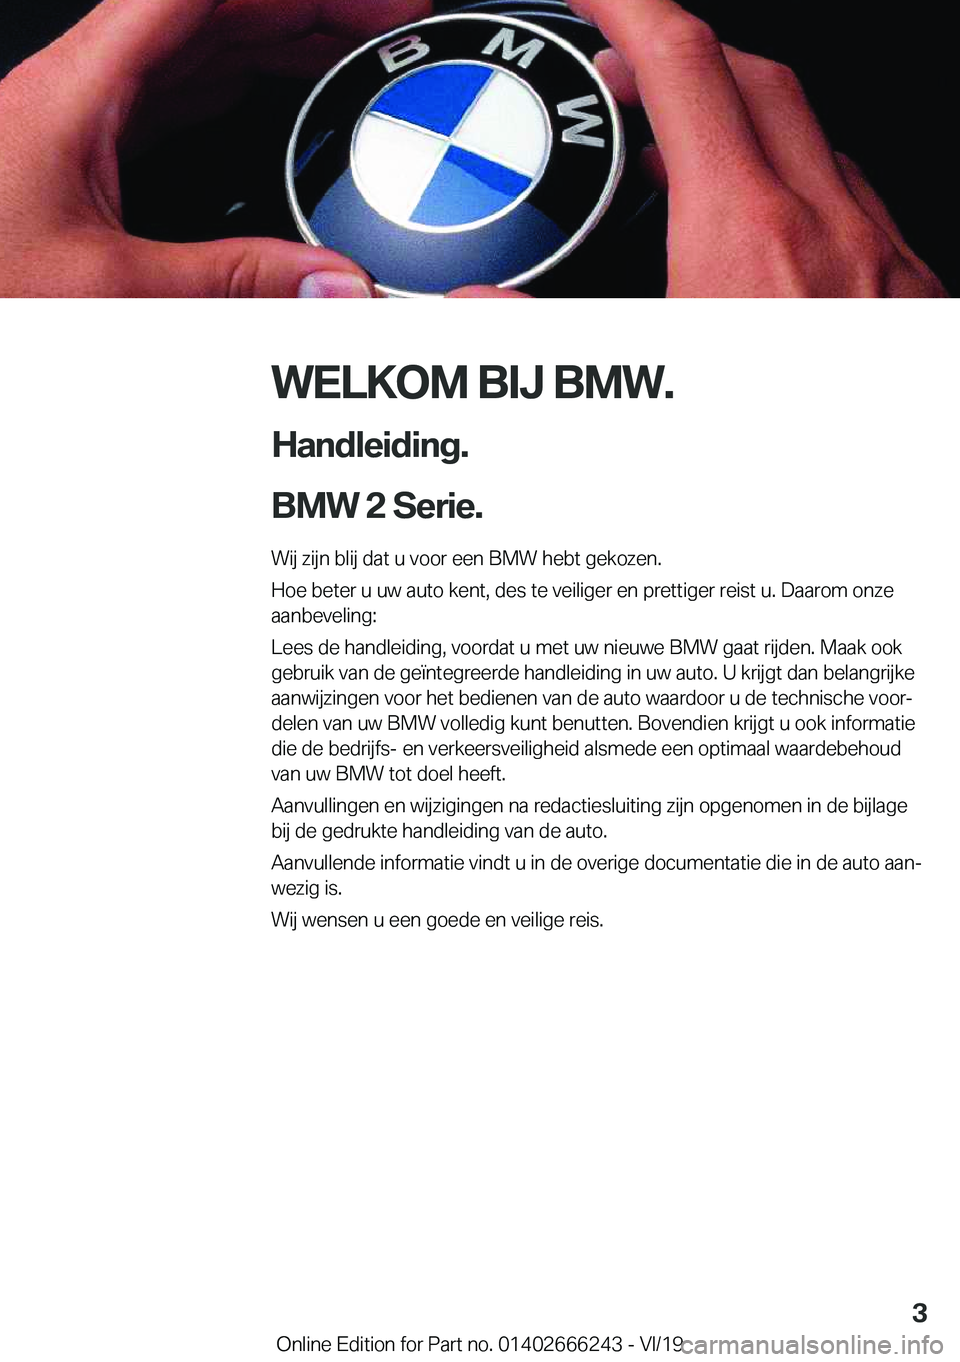 BMW 2 SERIES COUPE 2020  Instructieboekjes (in Dutch) �W�E�L�K�O�M��B�I�J��B�M�W�.
�H�a�n�d�l�e�i�d�i�n�g�.
�B�M�W��2��S�e�r�i�e�.� �W�i�j��z�i�j�n��b�l�i�j��d�a�t��u��v�o�o�r��e�e�n��B�M�W��h�e�b�t��g�e�k�o�z�e�n�.
�H�o�e��b�e�t�e�r��u�